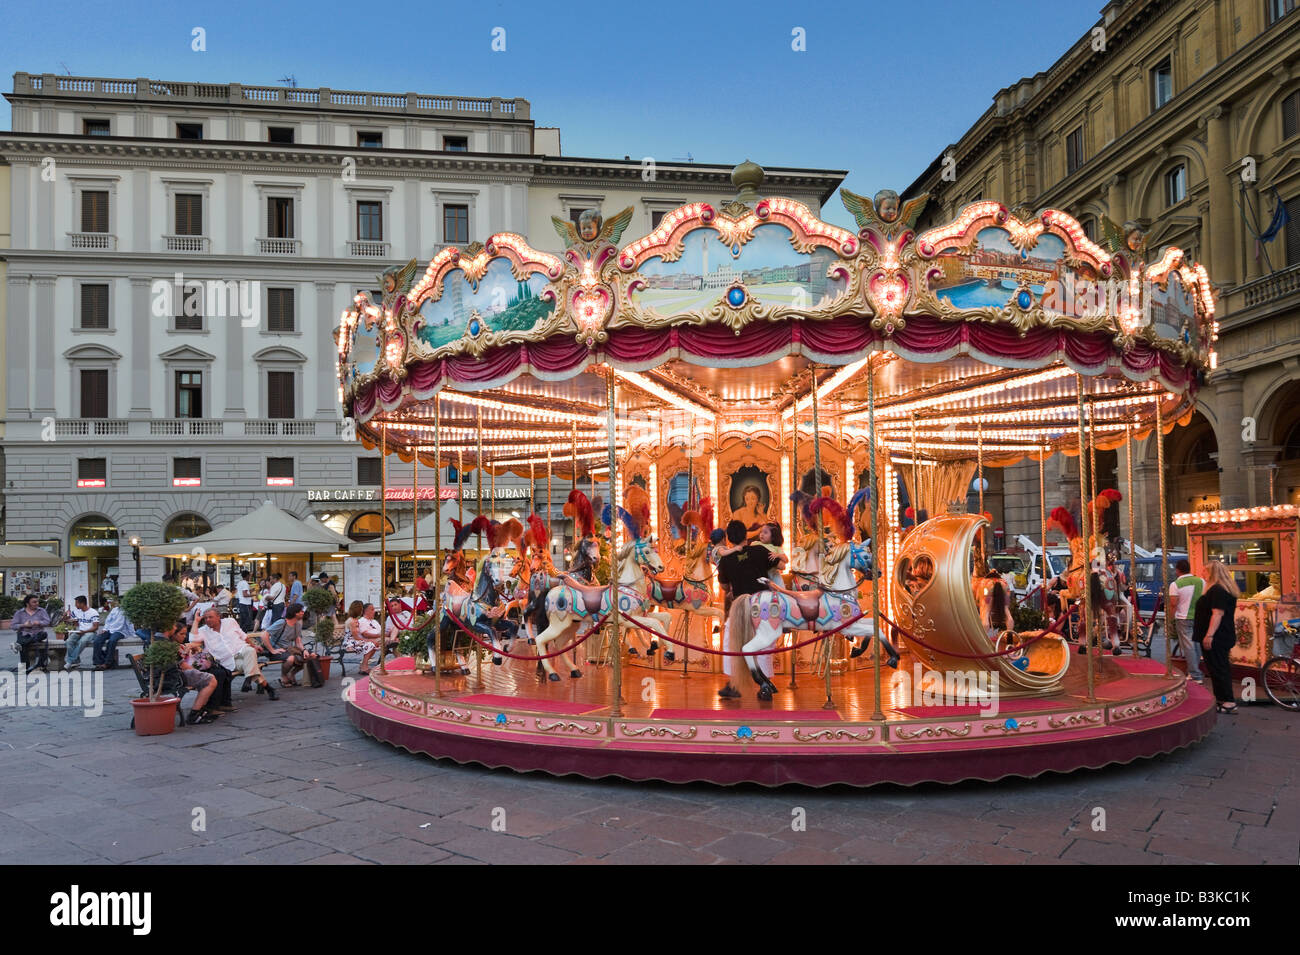 Dans le Carrousel de la Piazza della Republica, Florence, Toscane, Italie Banque D'Images